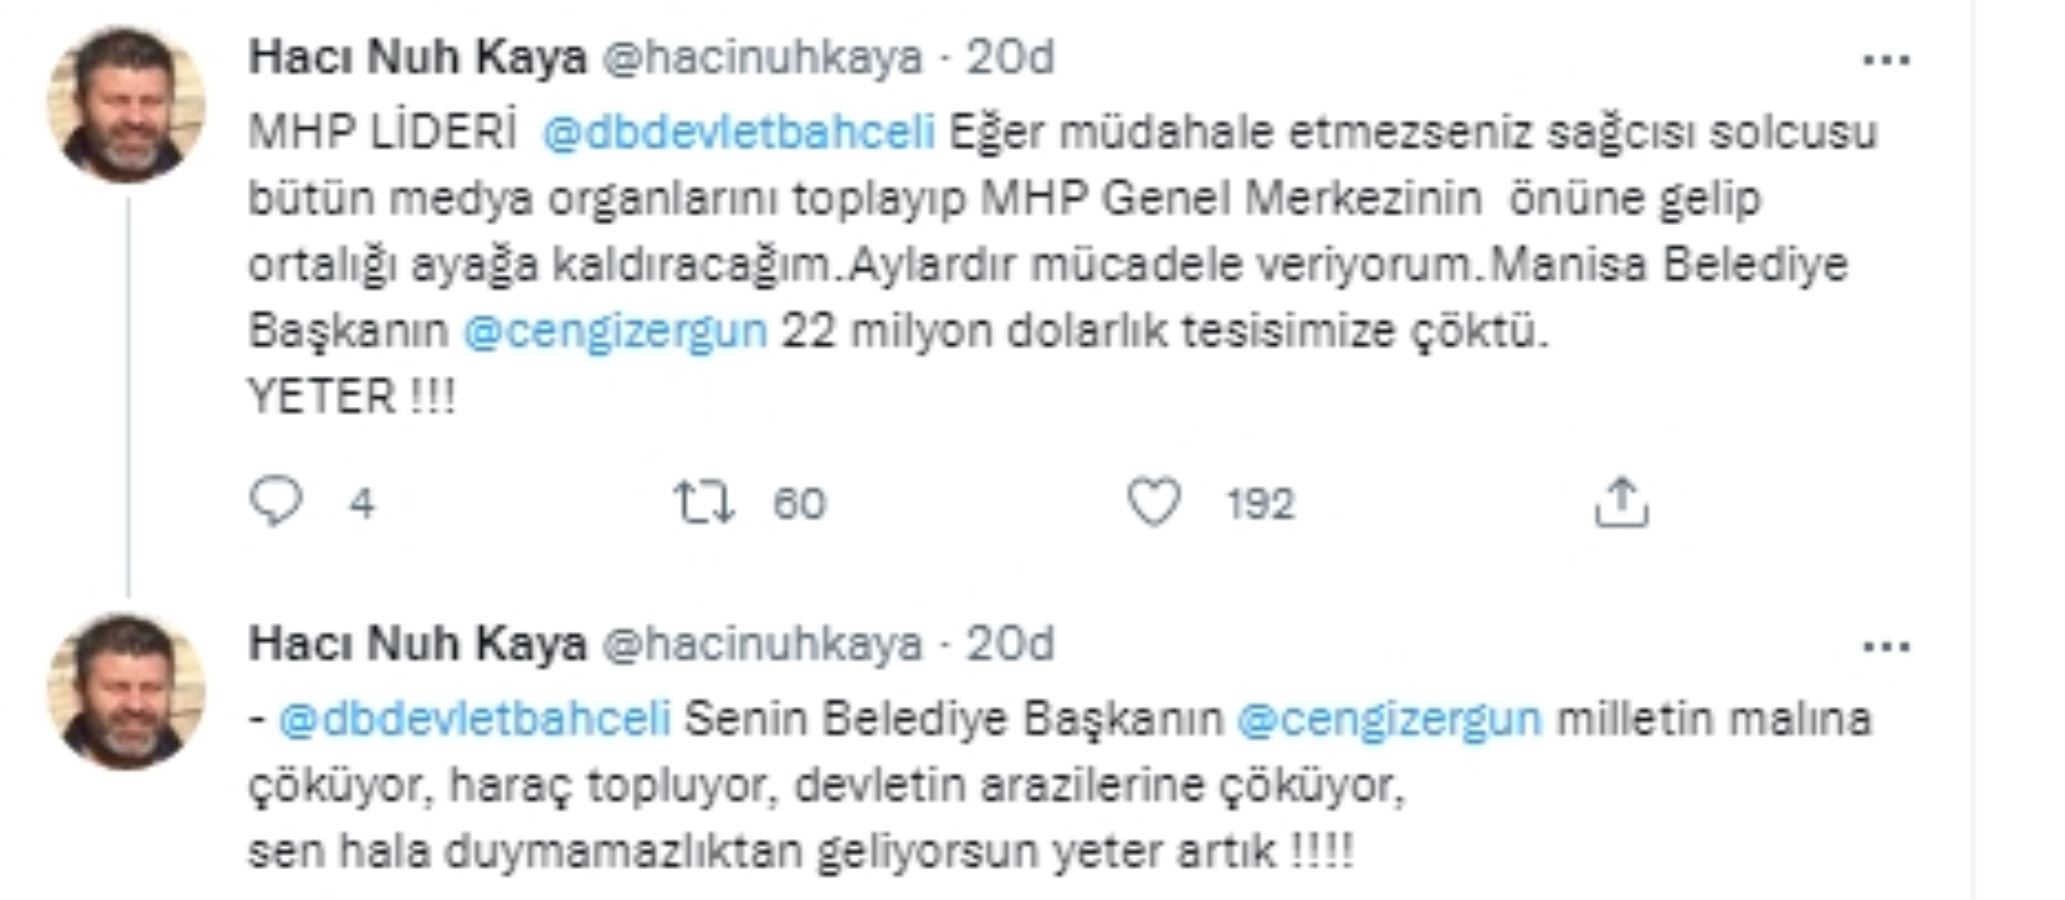 Hacı Nuh Kaya'dan, Devlet Bahçeli'ye: 'Müdahale etmezseniz MHP Genel Merkezi'nin önüne gelip ortalığı ayağa kaldıracağım'